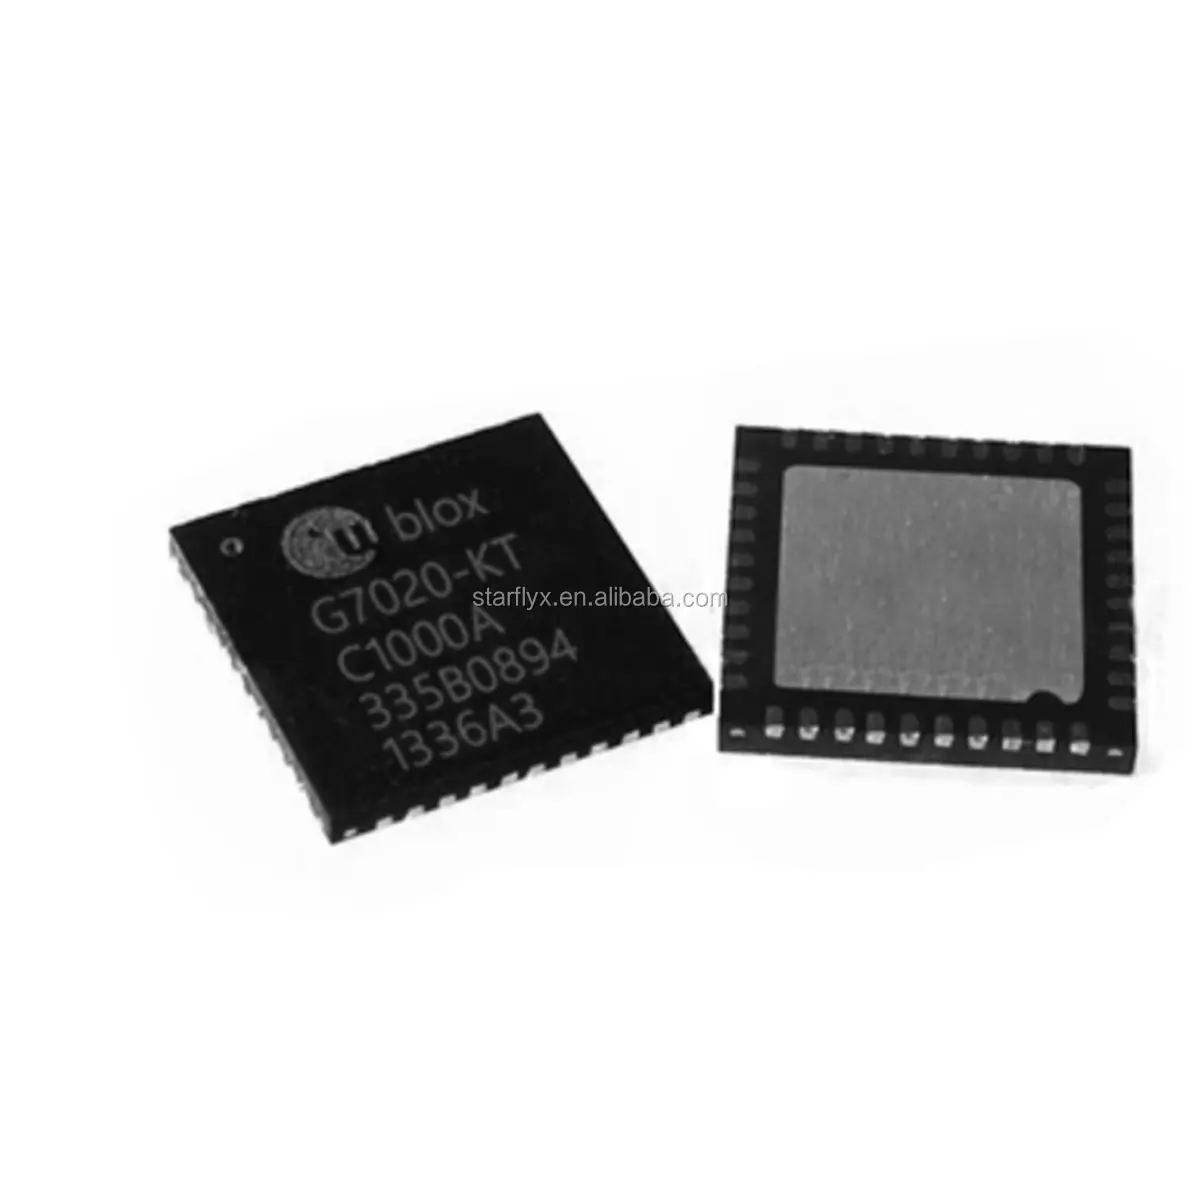 UBX-G7020-KT GPS Glonass, чип для спутникового позиционирования, IC электронный компонент